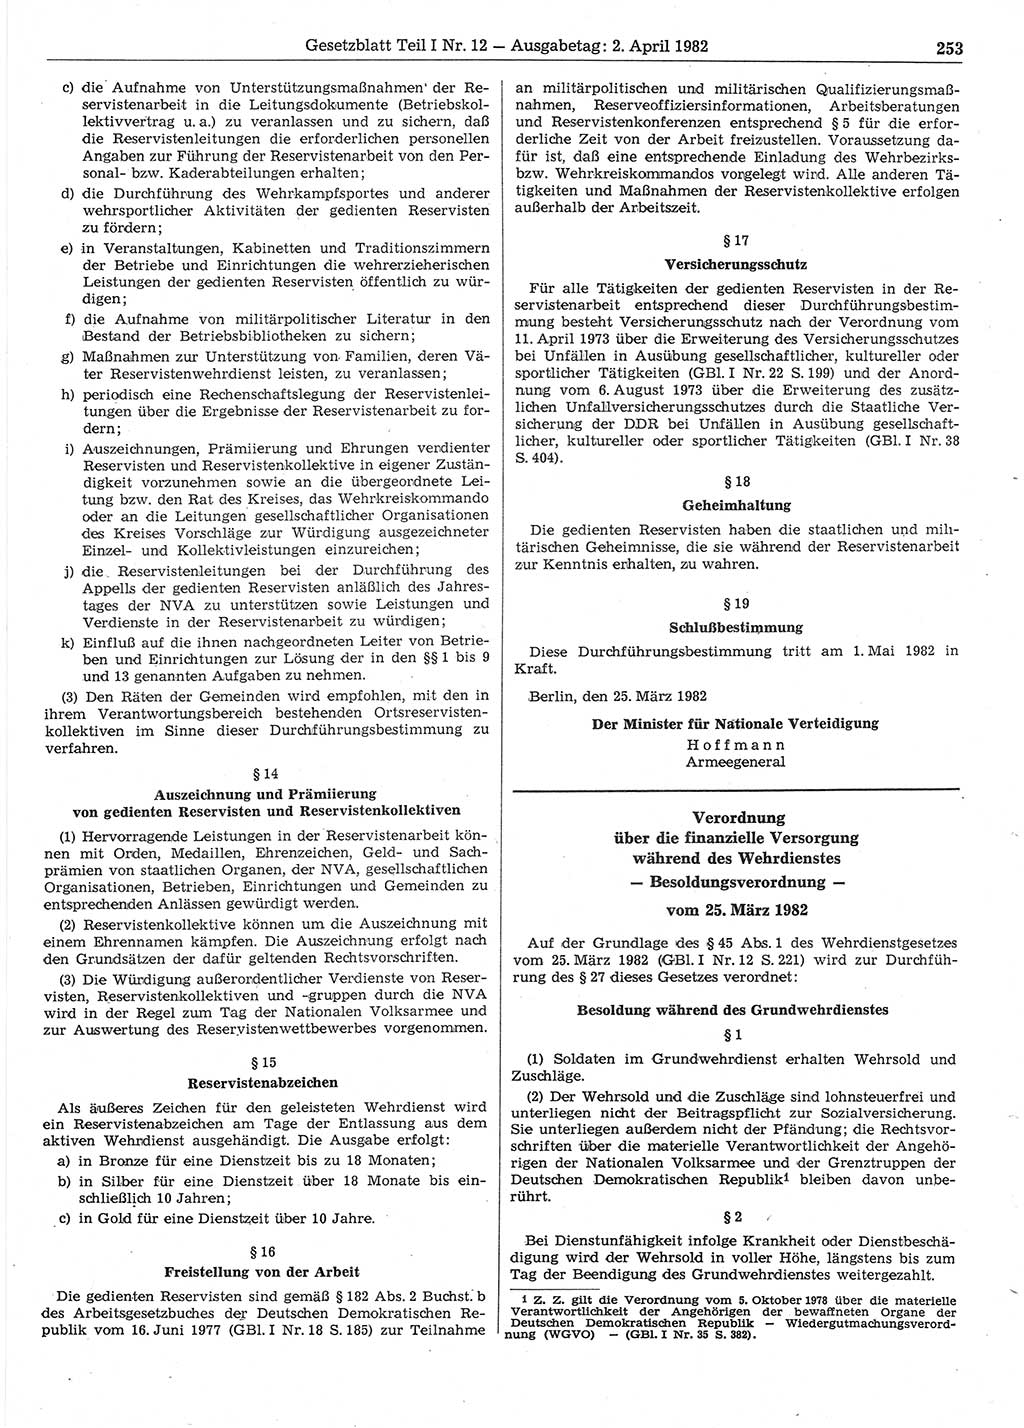 Gesetzblatt (GBl.) der Deutschen Demokratischen Republik (DDR) Teil Ⅰ 1982, Seite 253 (GBl. DDR Ⅰ 1982, S. 253)